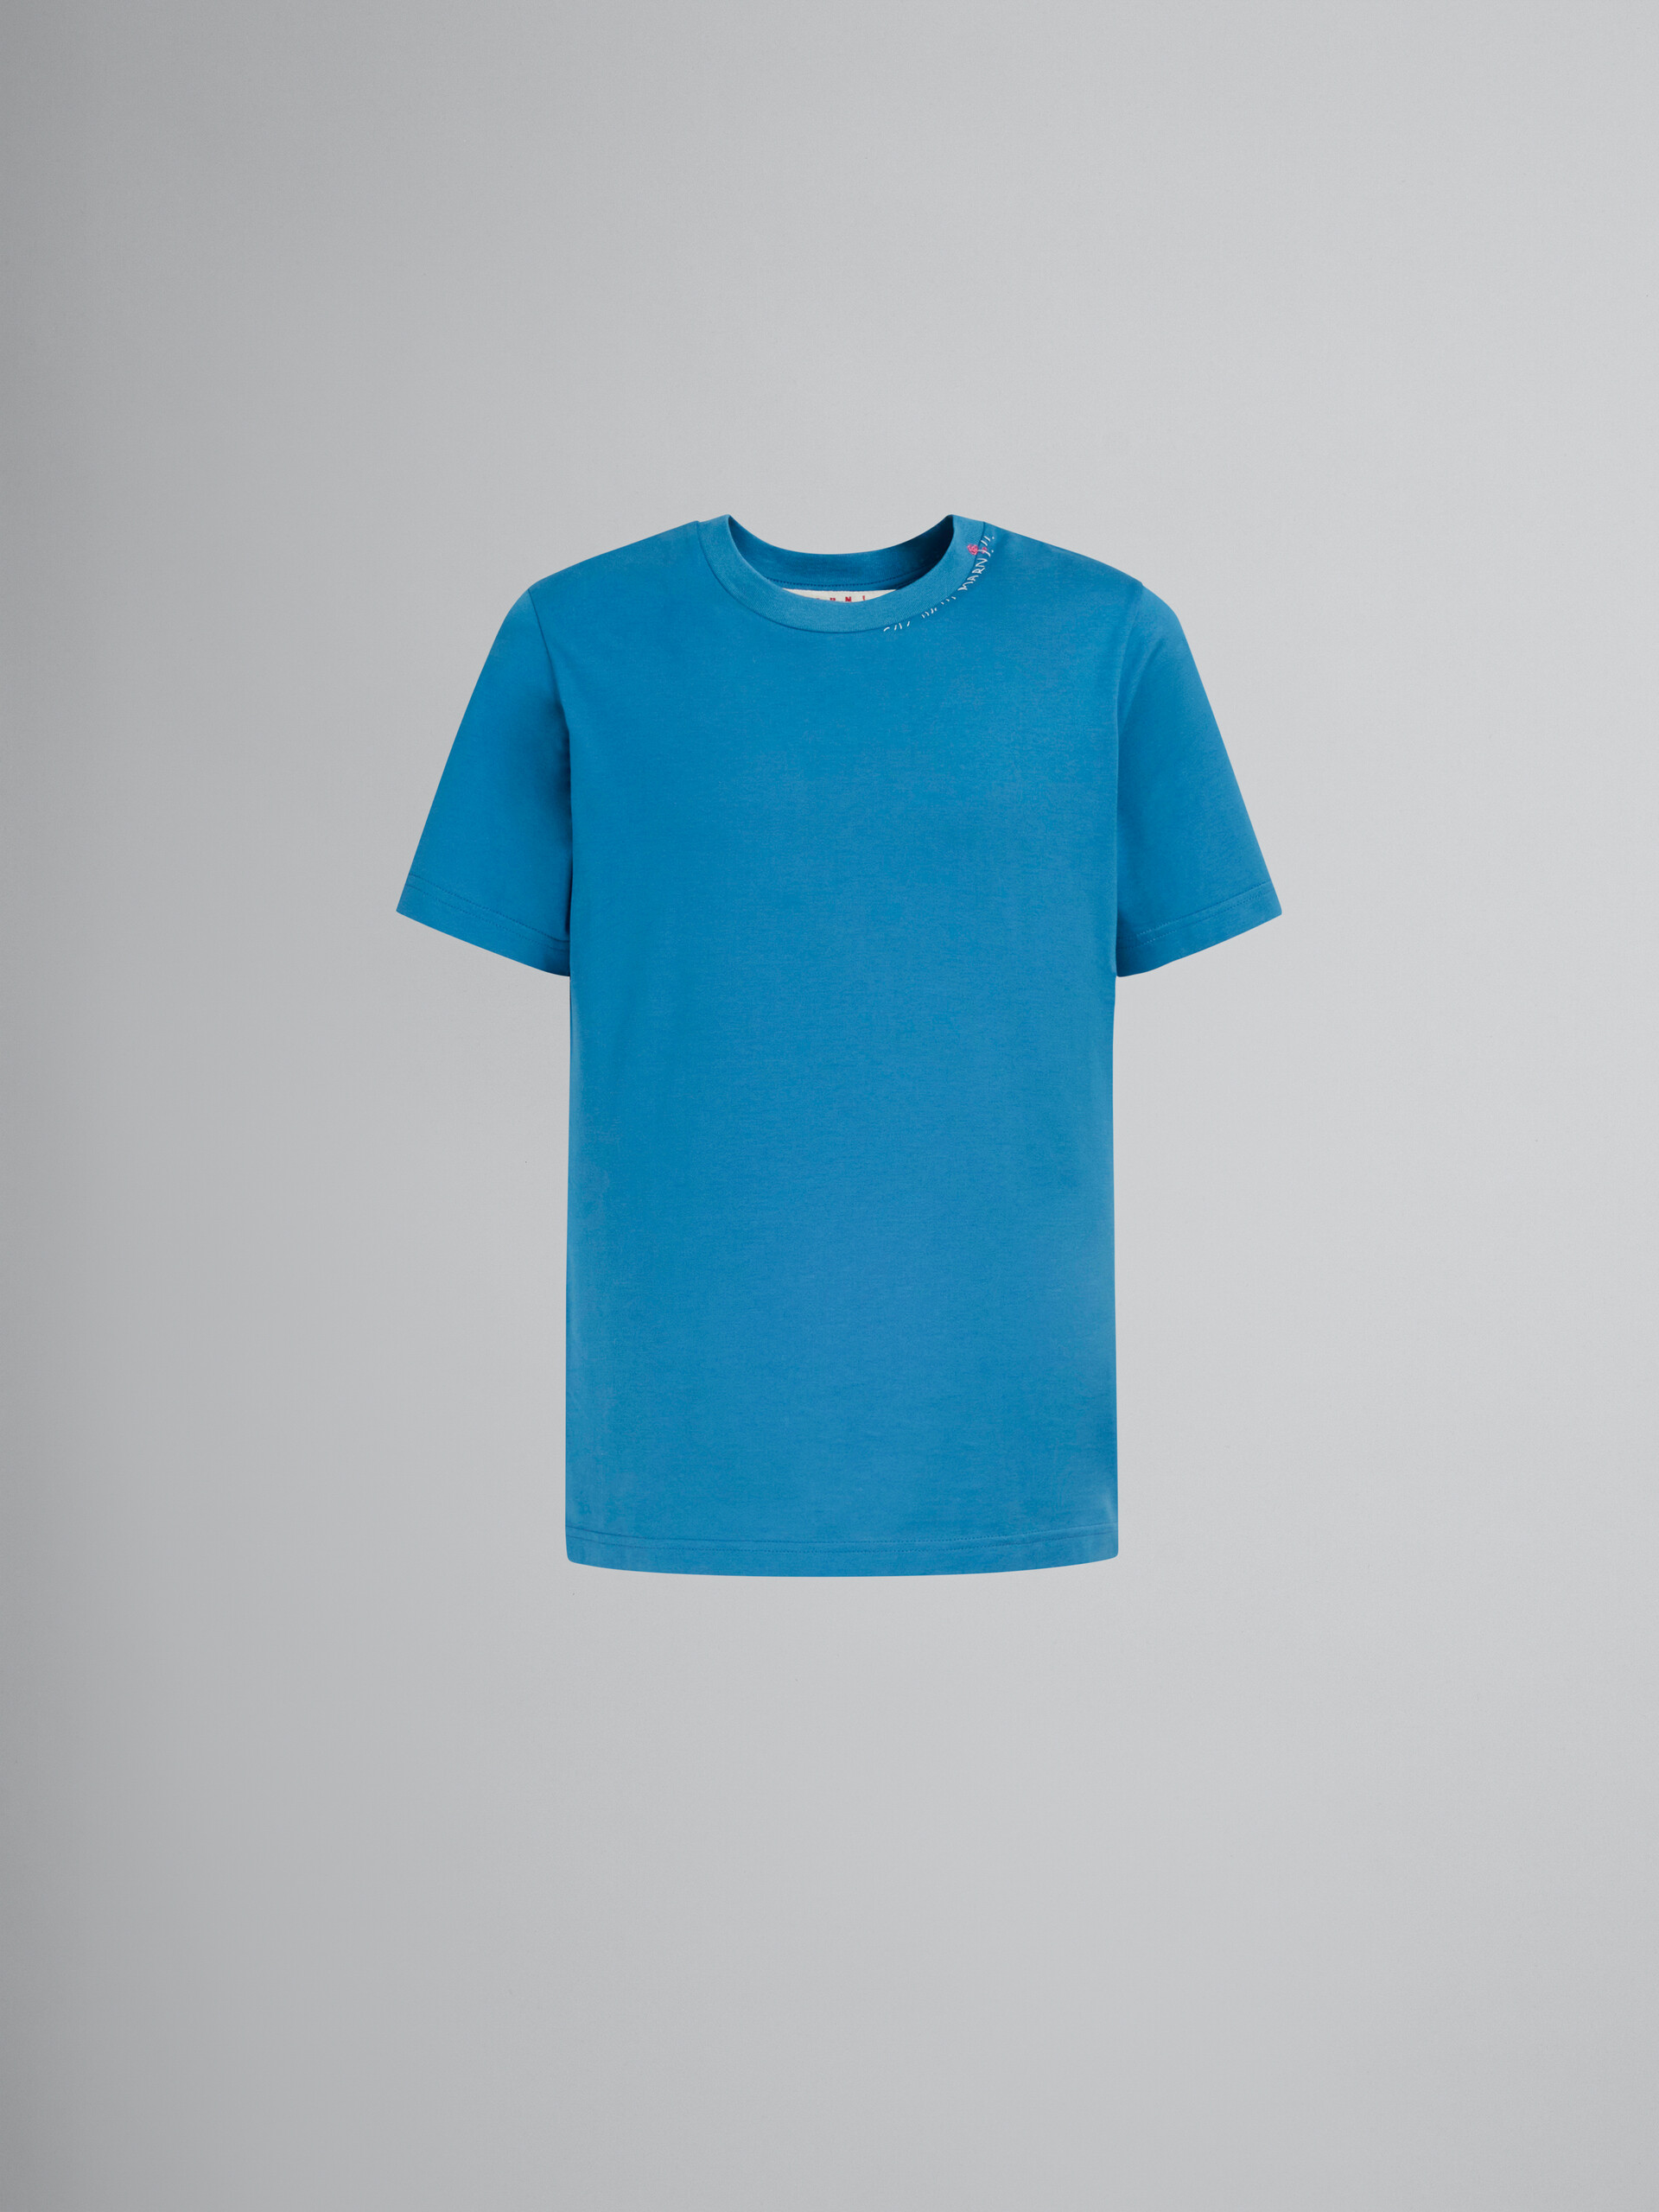 Blaues T-Shirt aus Baumwolle mit Blumen-Print hinten - T-shirts - Image 1